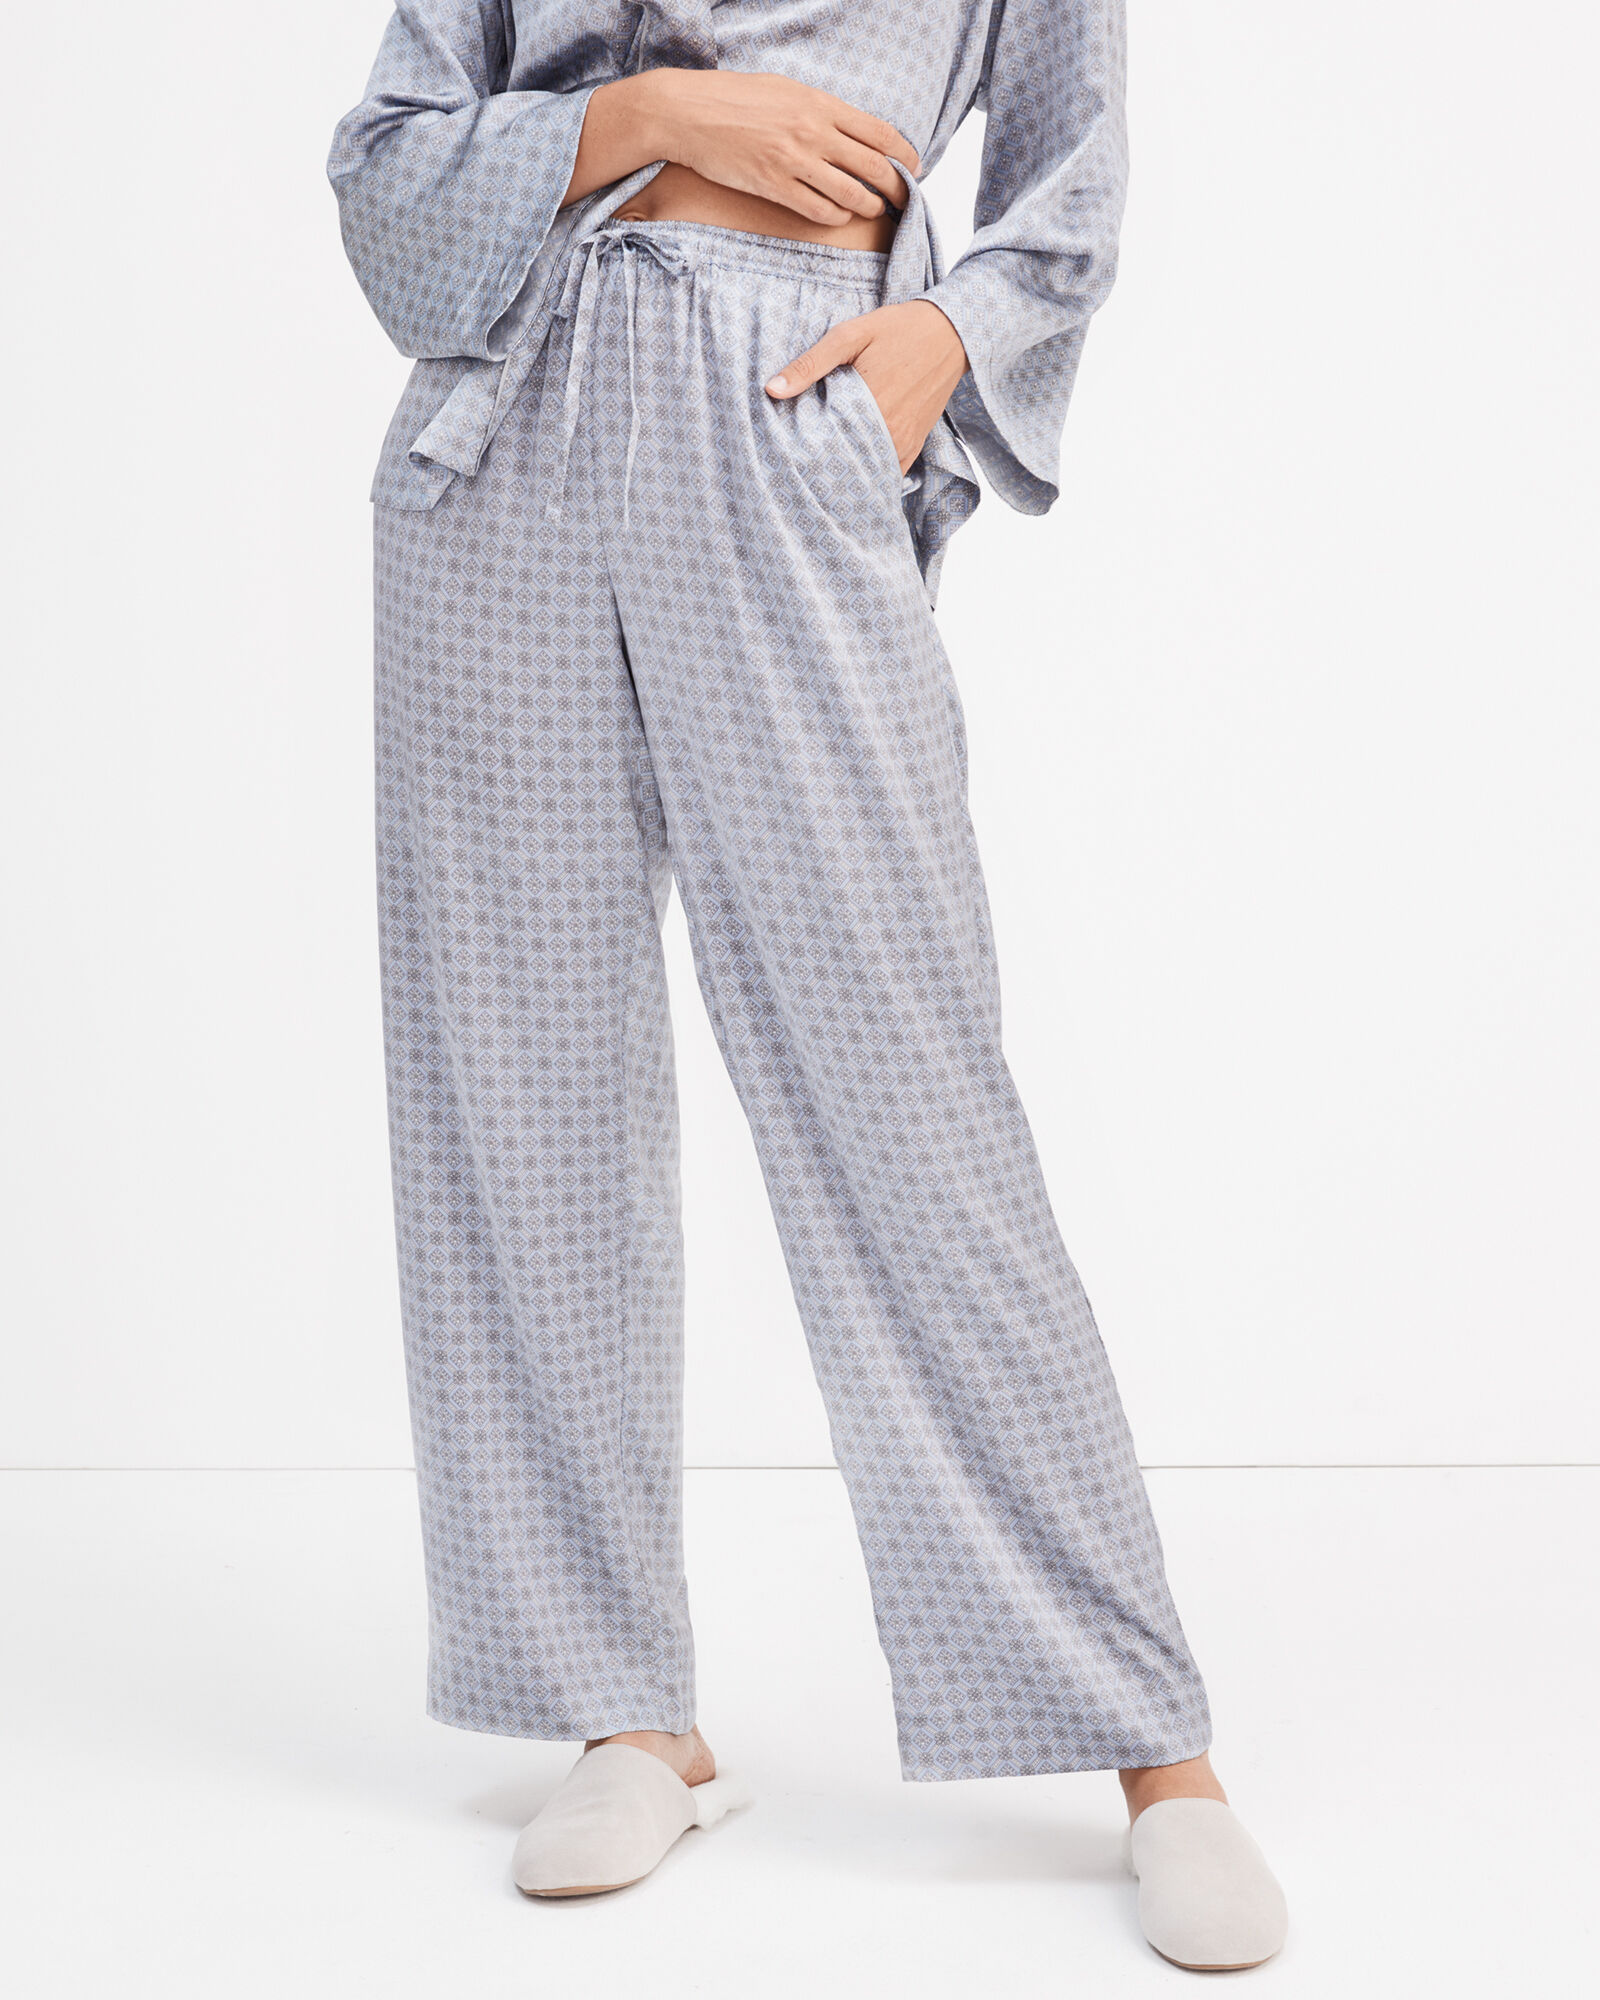 Silk Pajamas vs. Washable Silk Pajamas